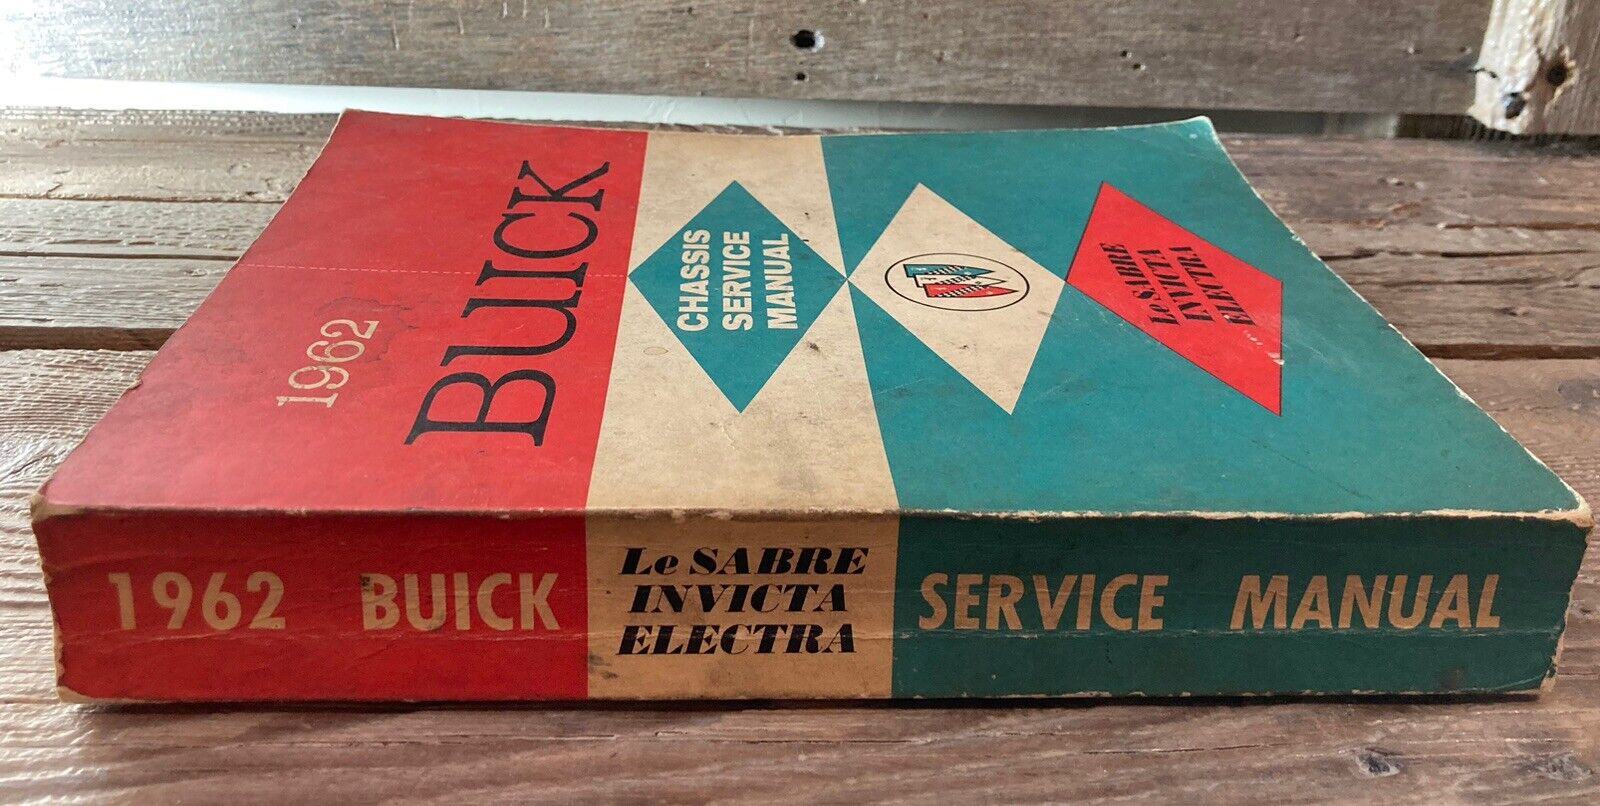 Vintage Original 1962 Buick Chassis Shop Service Manual LaSabre Invicta Electra